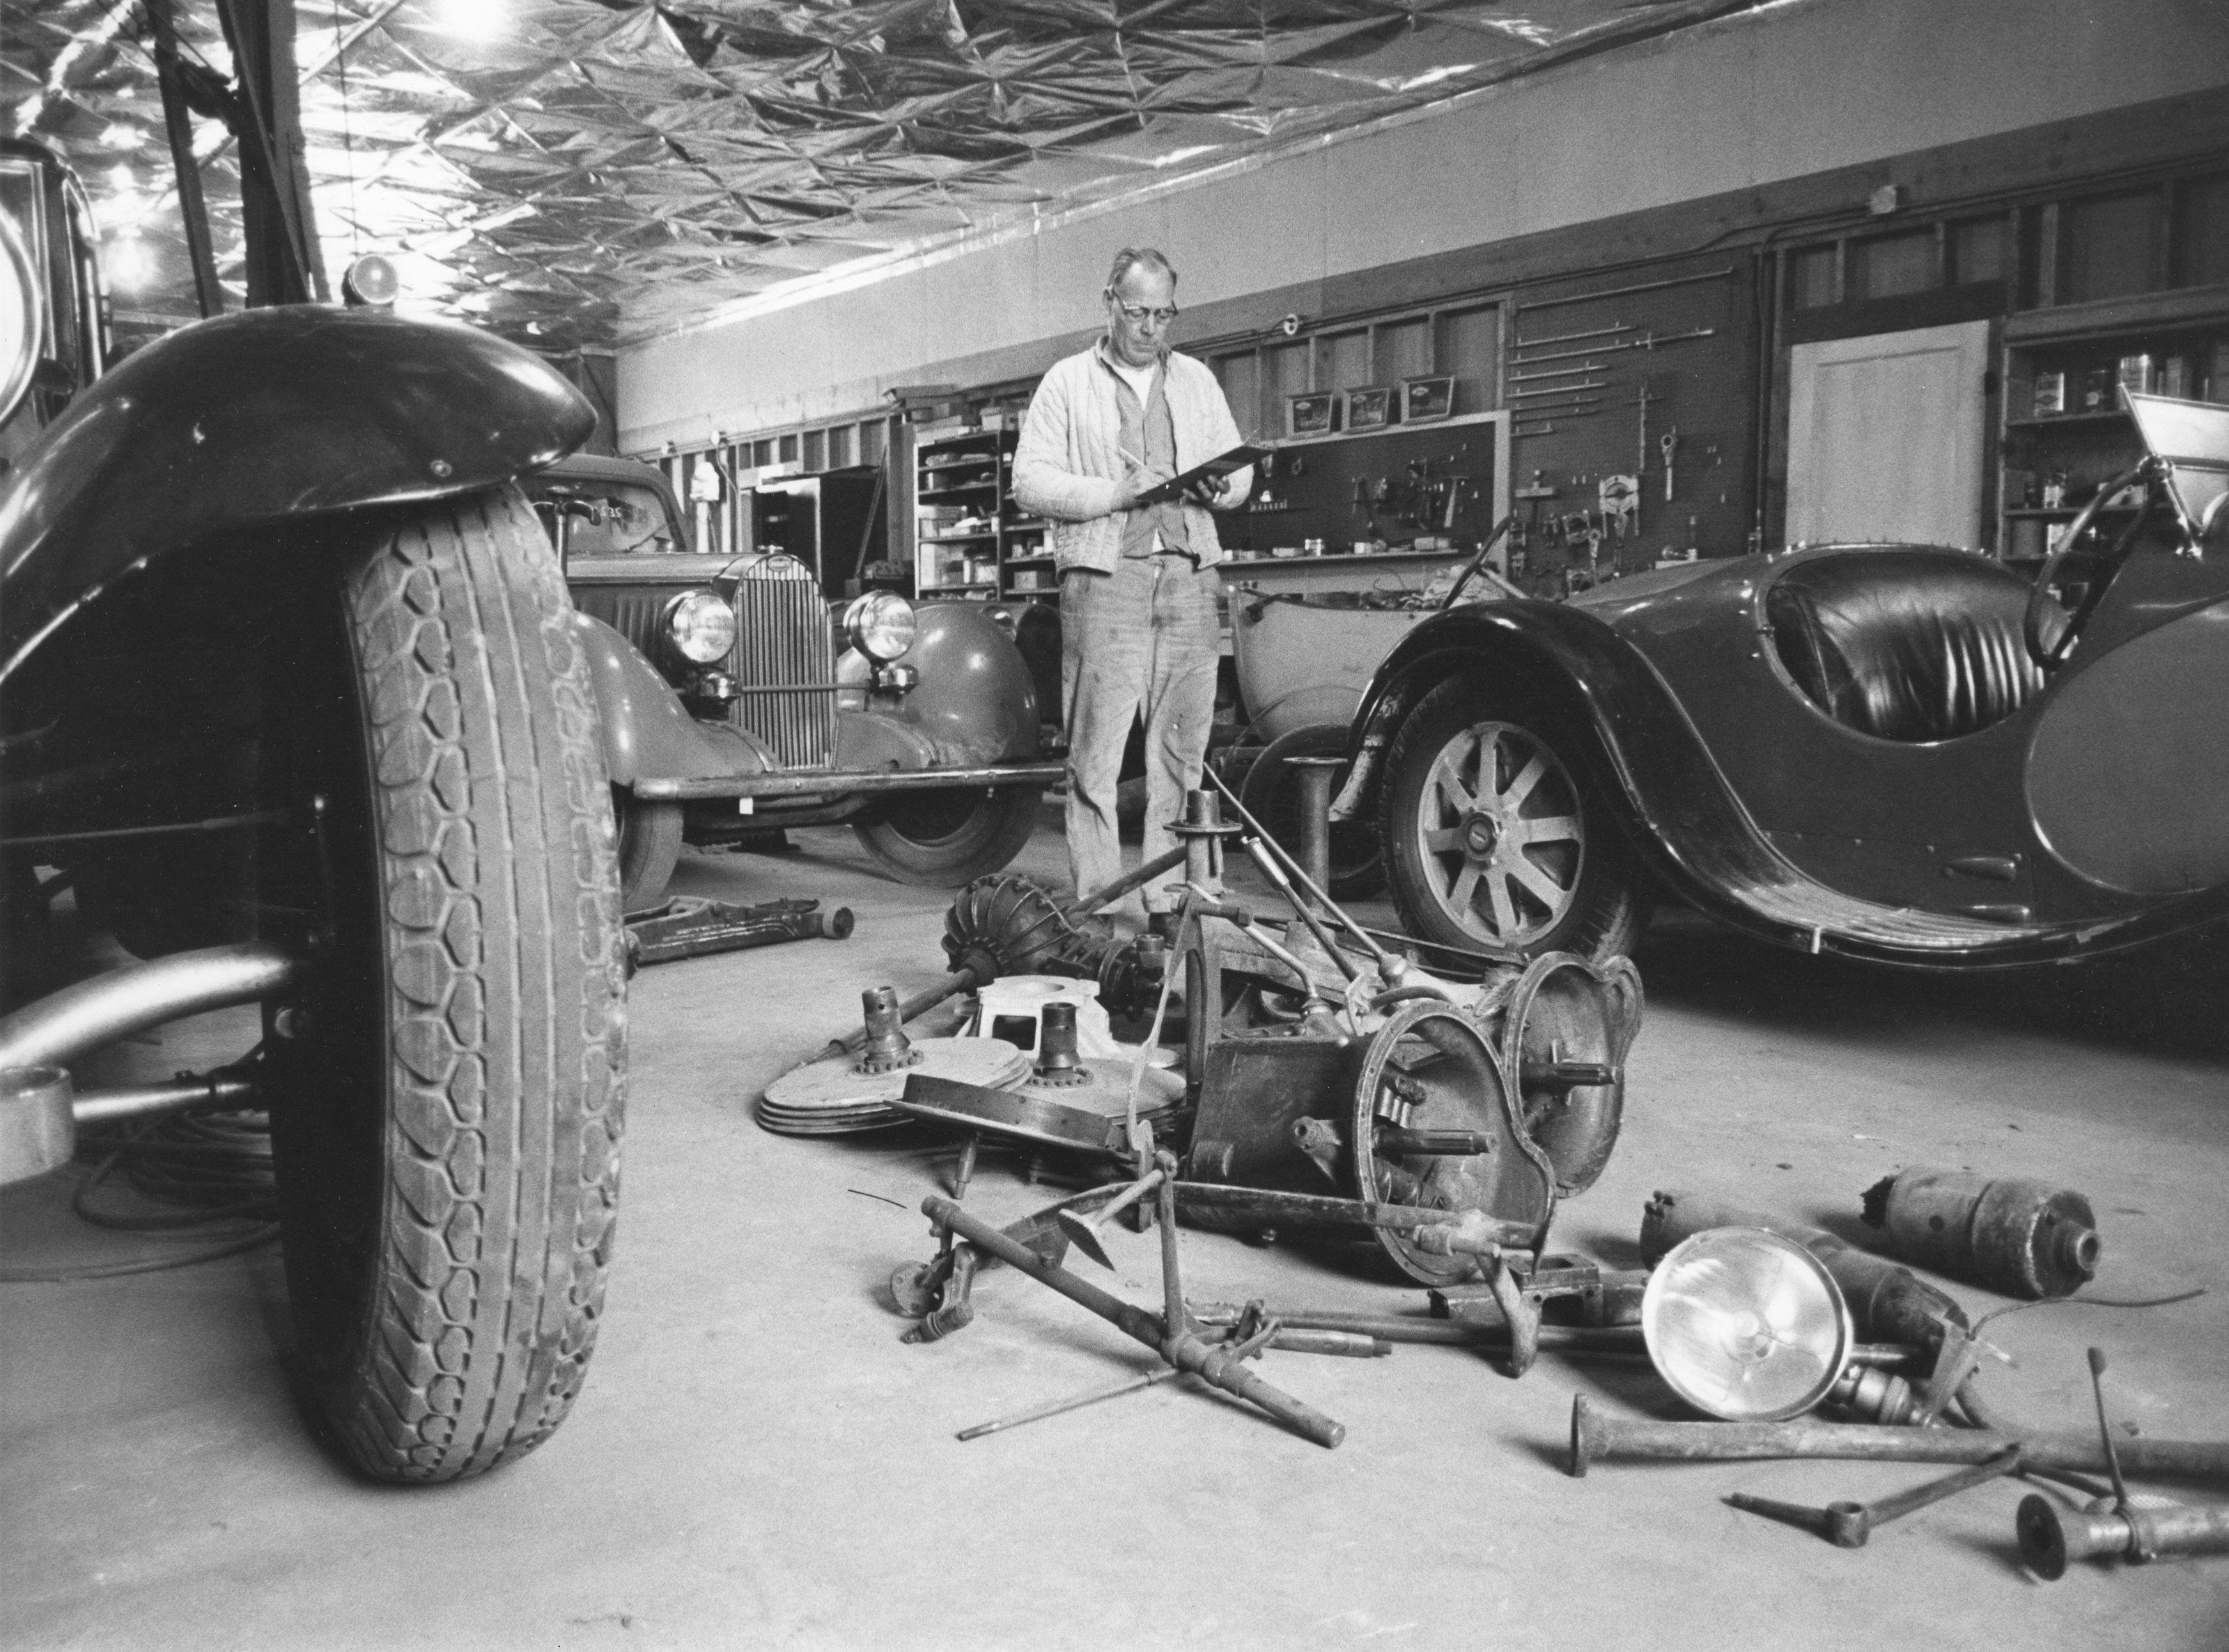 Historie – Wie die größte Bugatti-Sammlung zurück nach Frankreich gelang